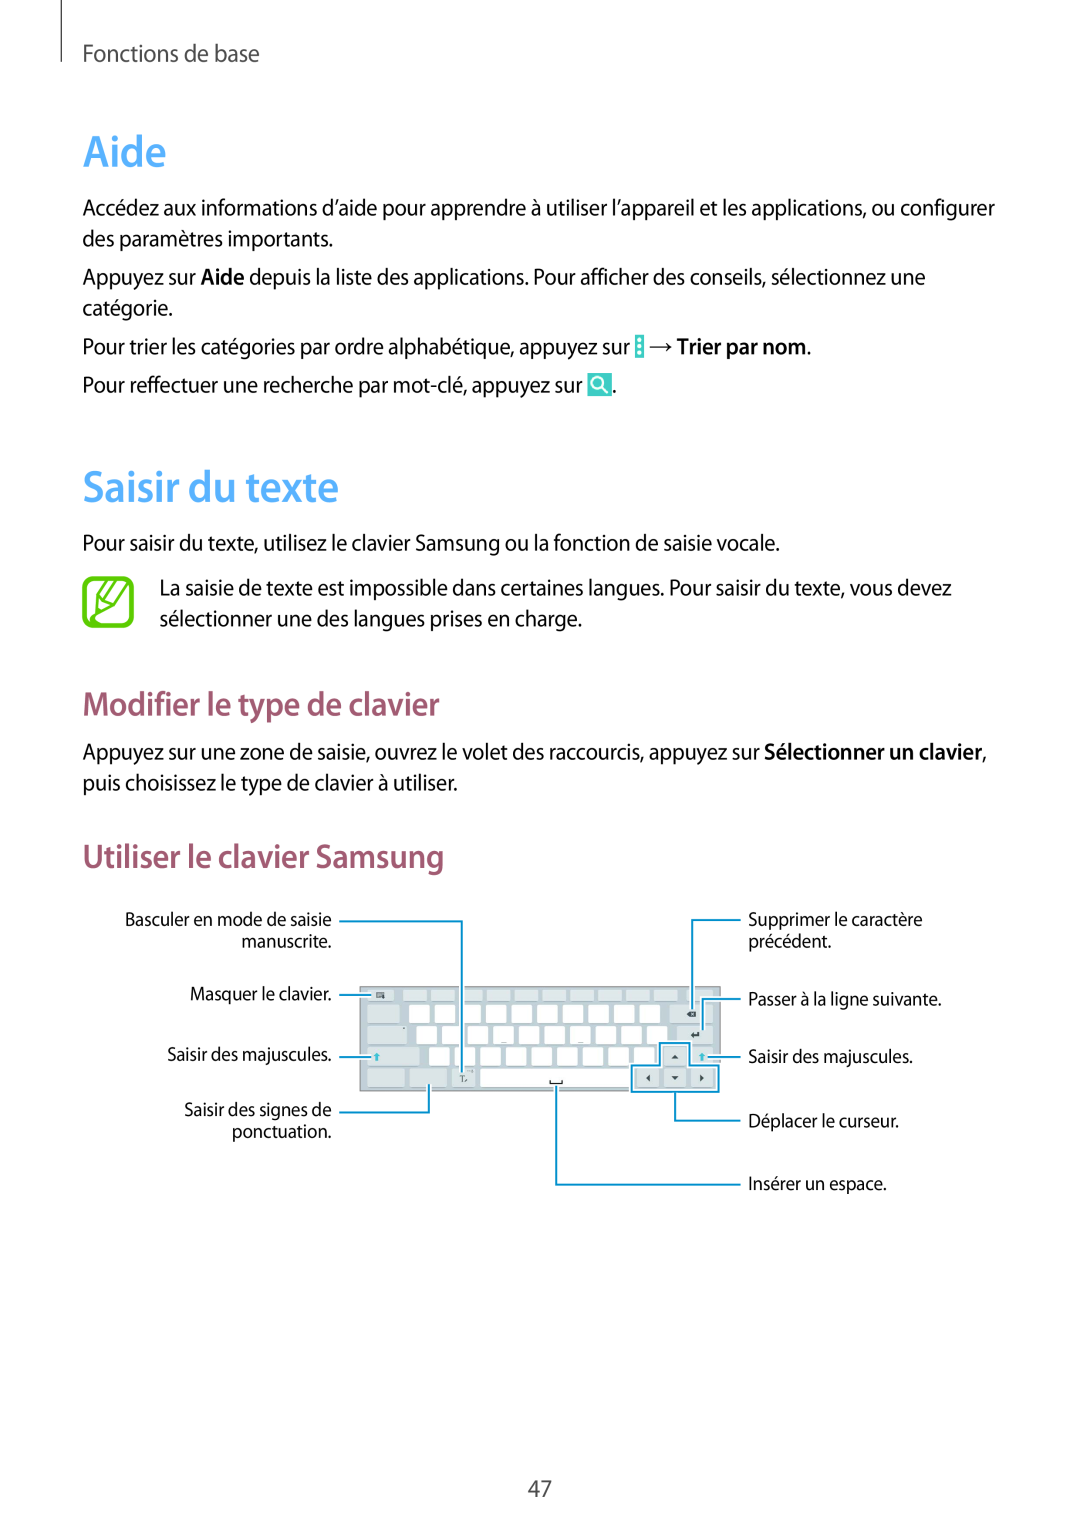 Samsung SM-P9050ZKAXEF Aide, Saisir du texte, Modifier le type de clavier, Utiliser le clavier Samsung, Fonctions de base 